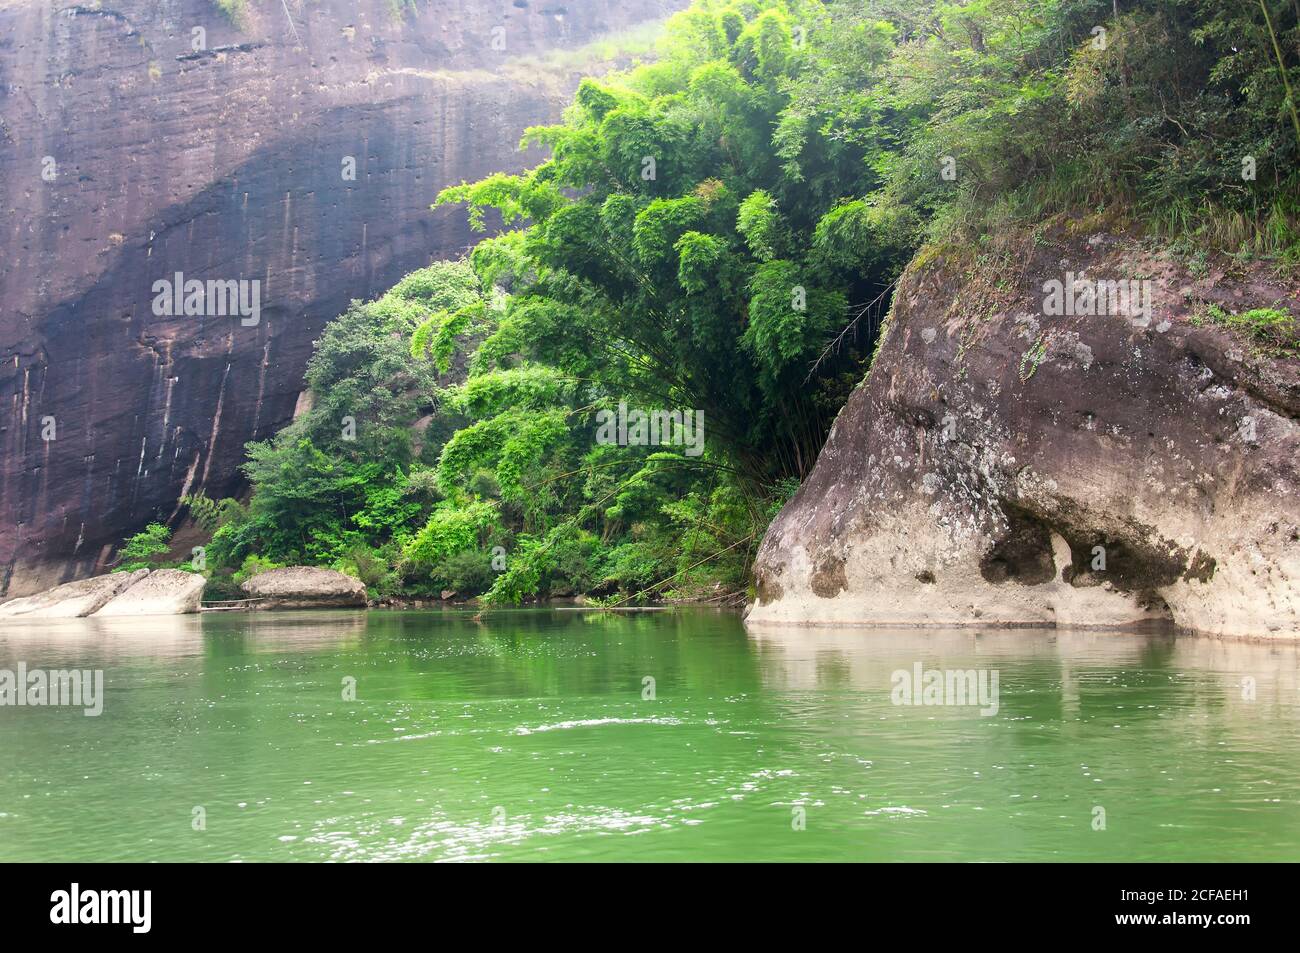 Un boschetto di alberi di bambù e insolite formazioni rocciose sul fiume a nove curve in cina wuyishan nella provincia fujiana. Foto Stock